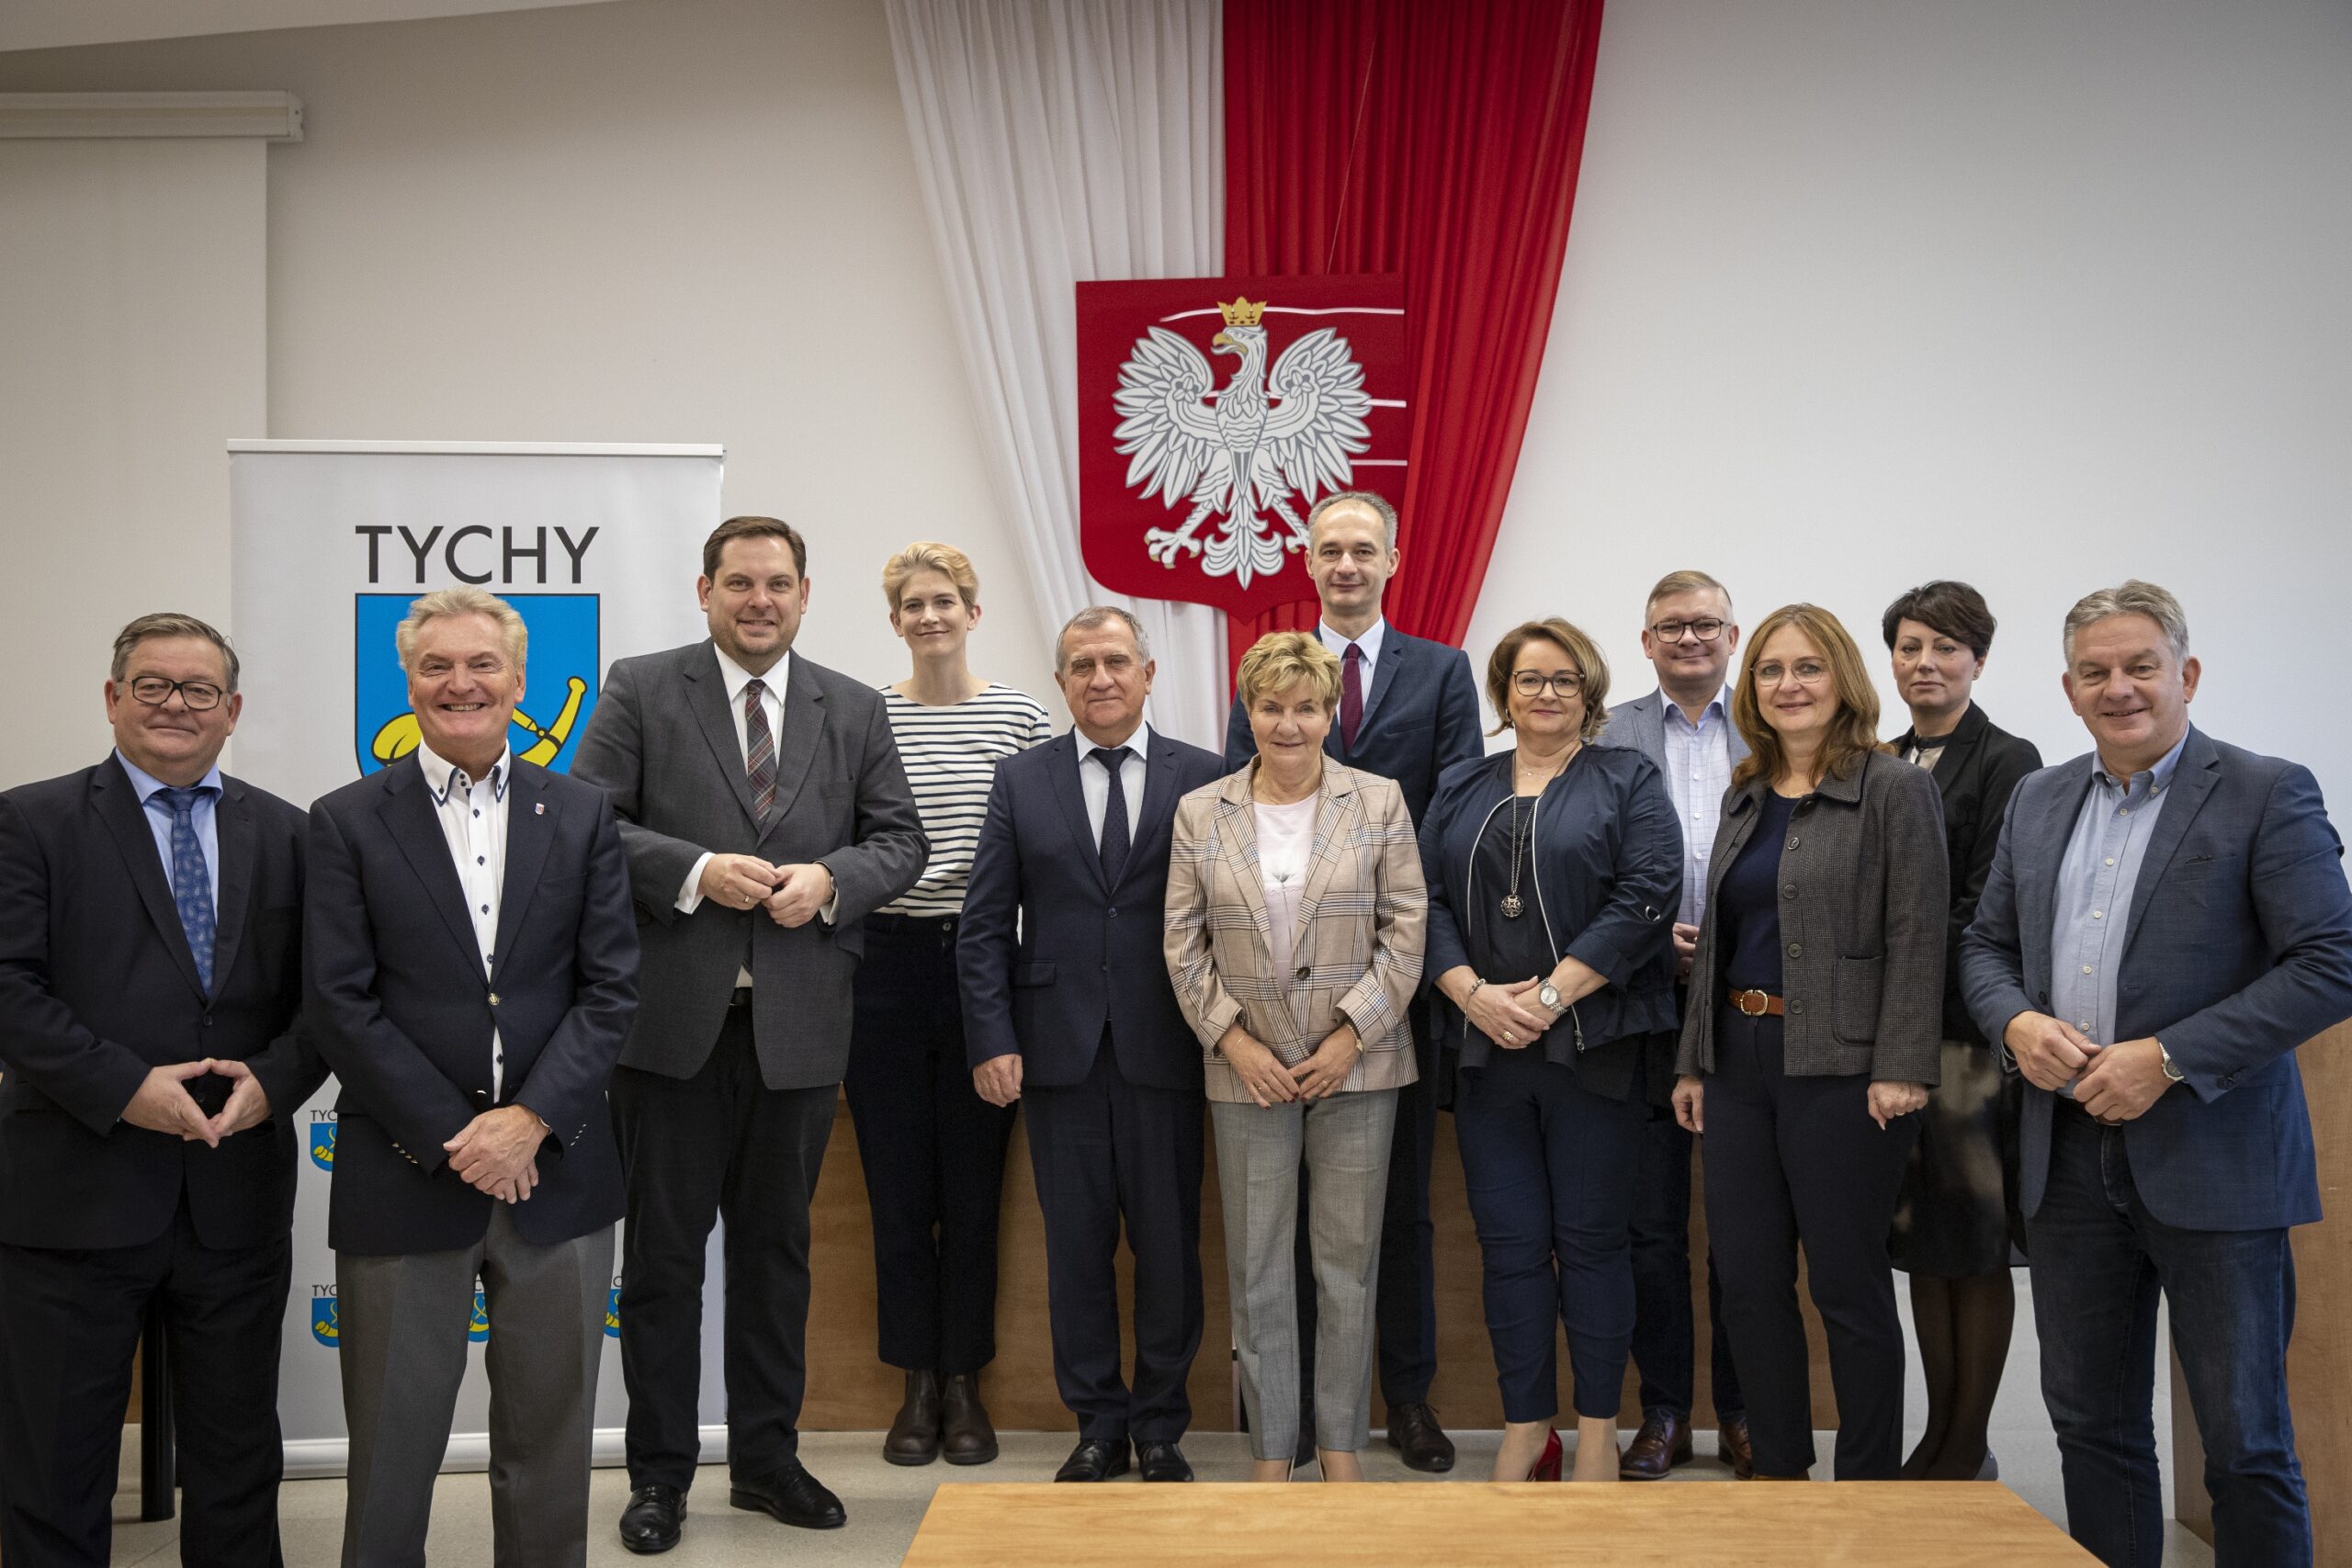 Städtepartnerschaft leben: Erste offizielle Delegation besucht polnisches Tychy